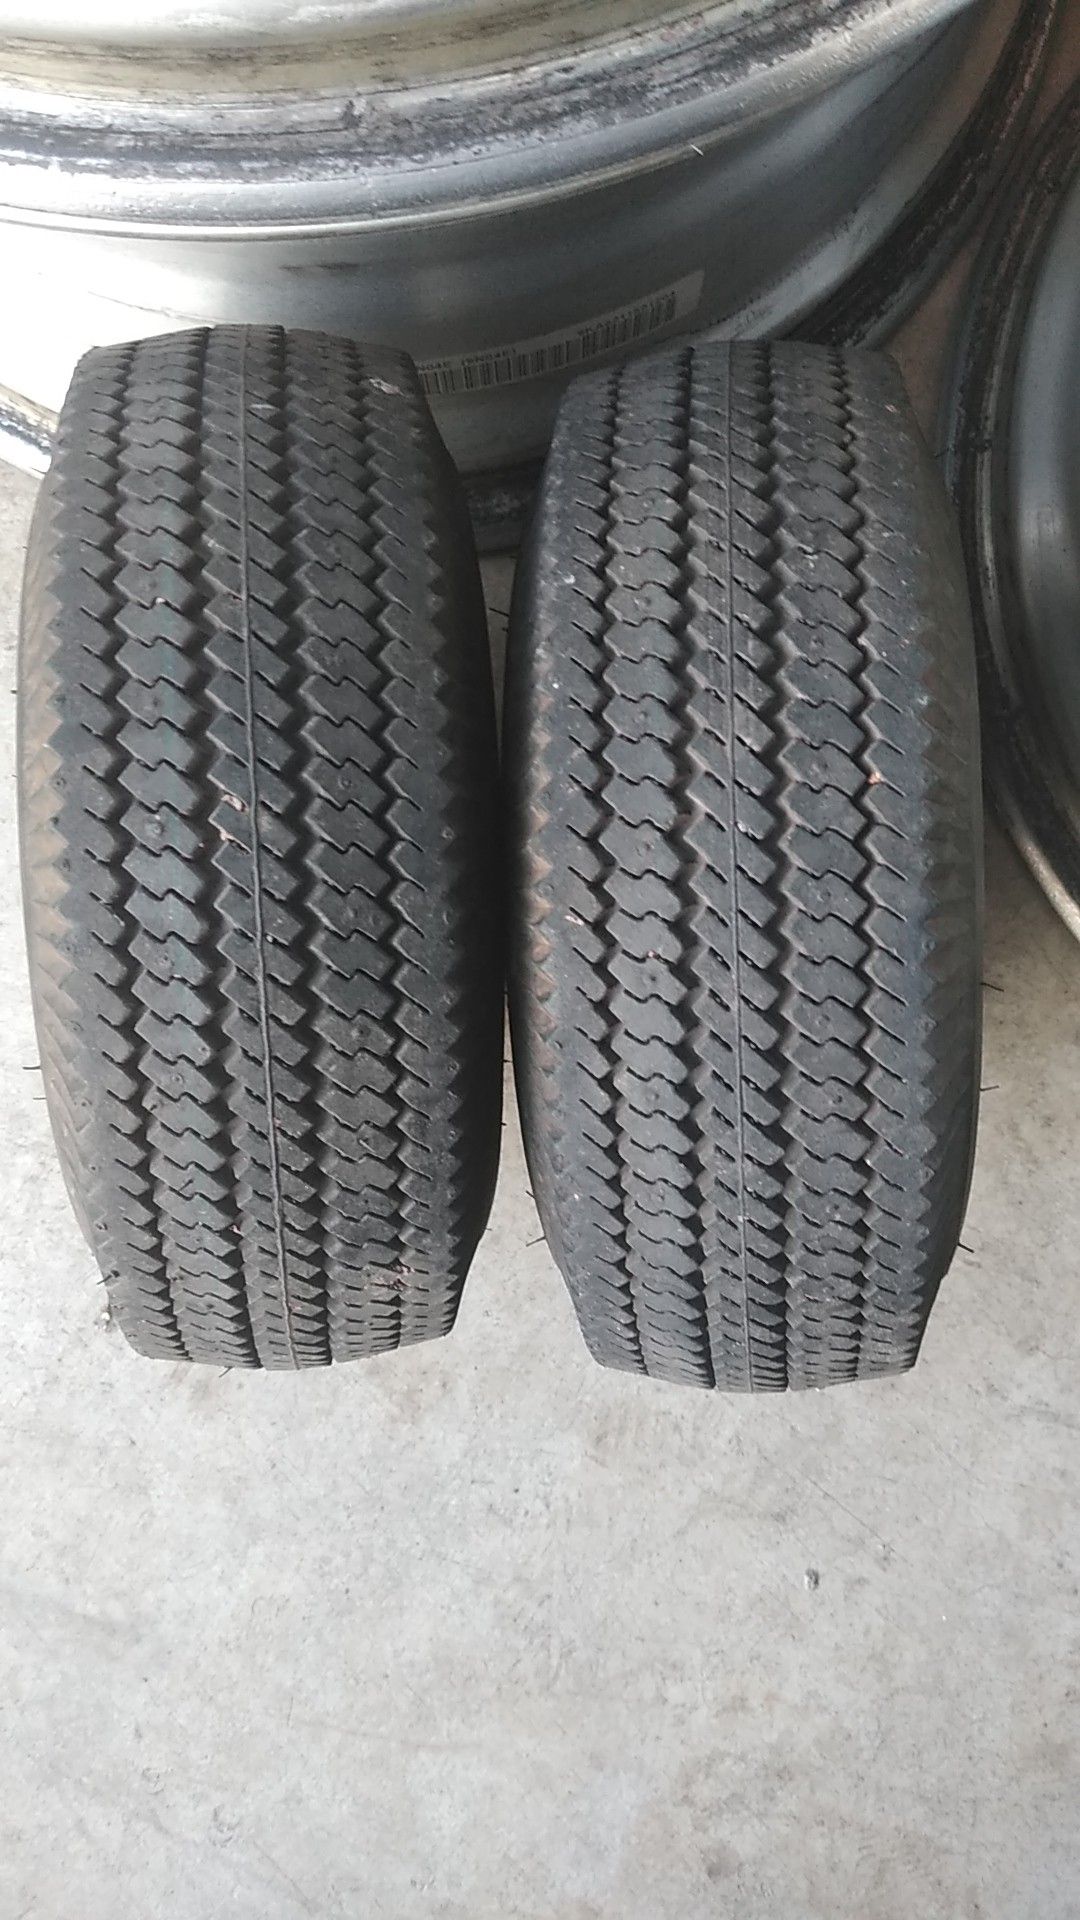 Small tire's full of air great shape size 4.10/3.50-4 en buenas condiciones llantas